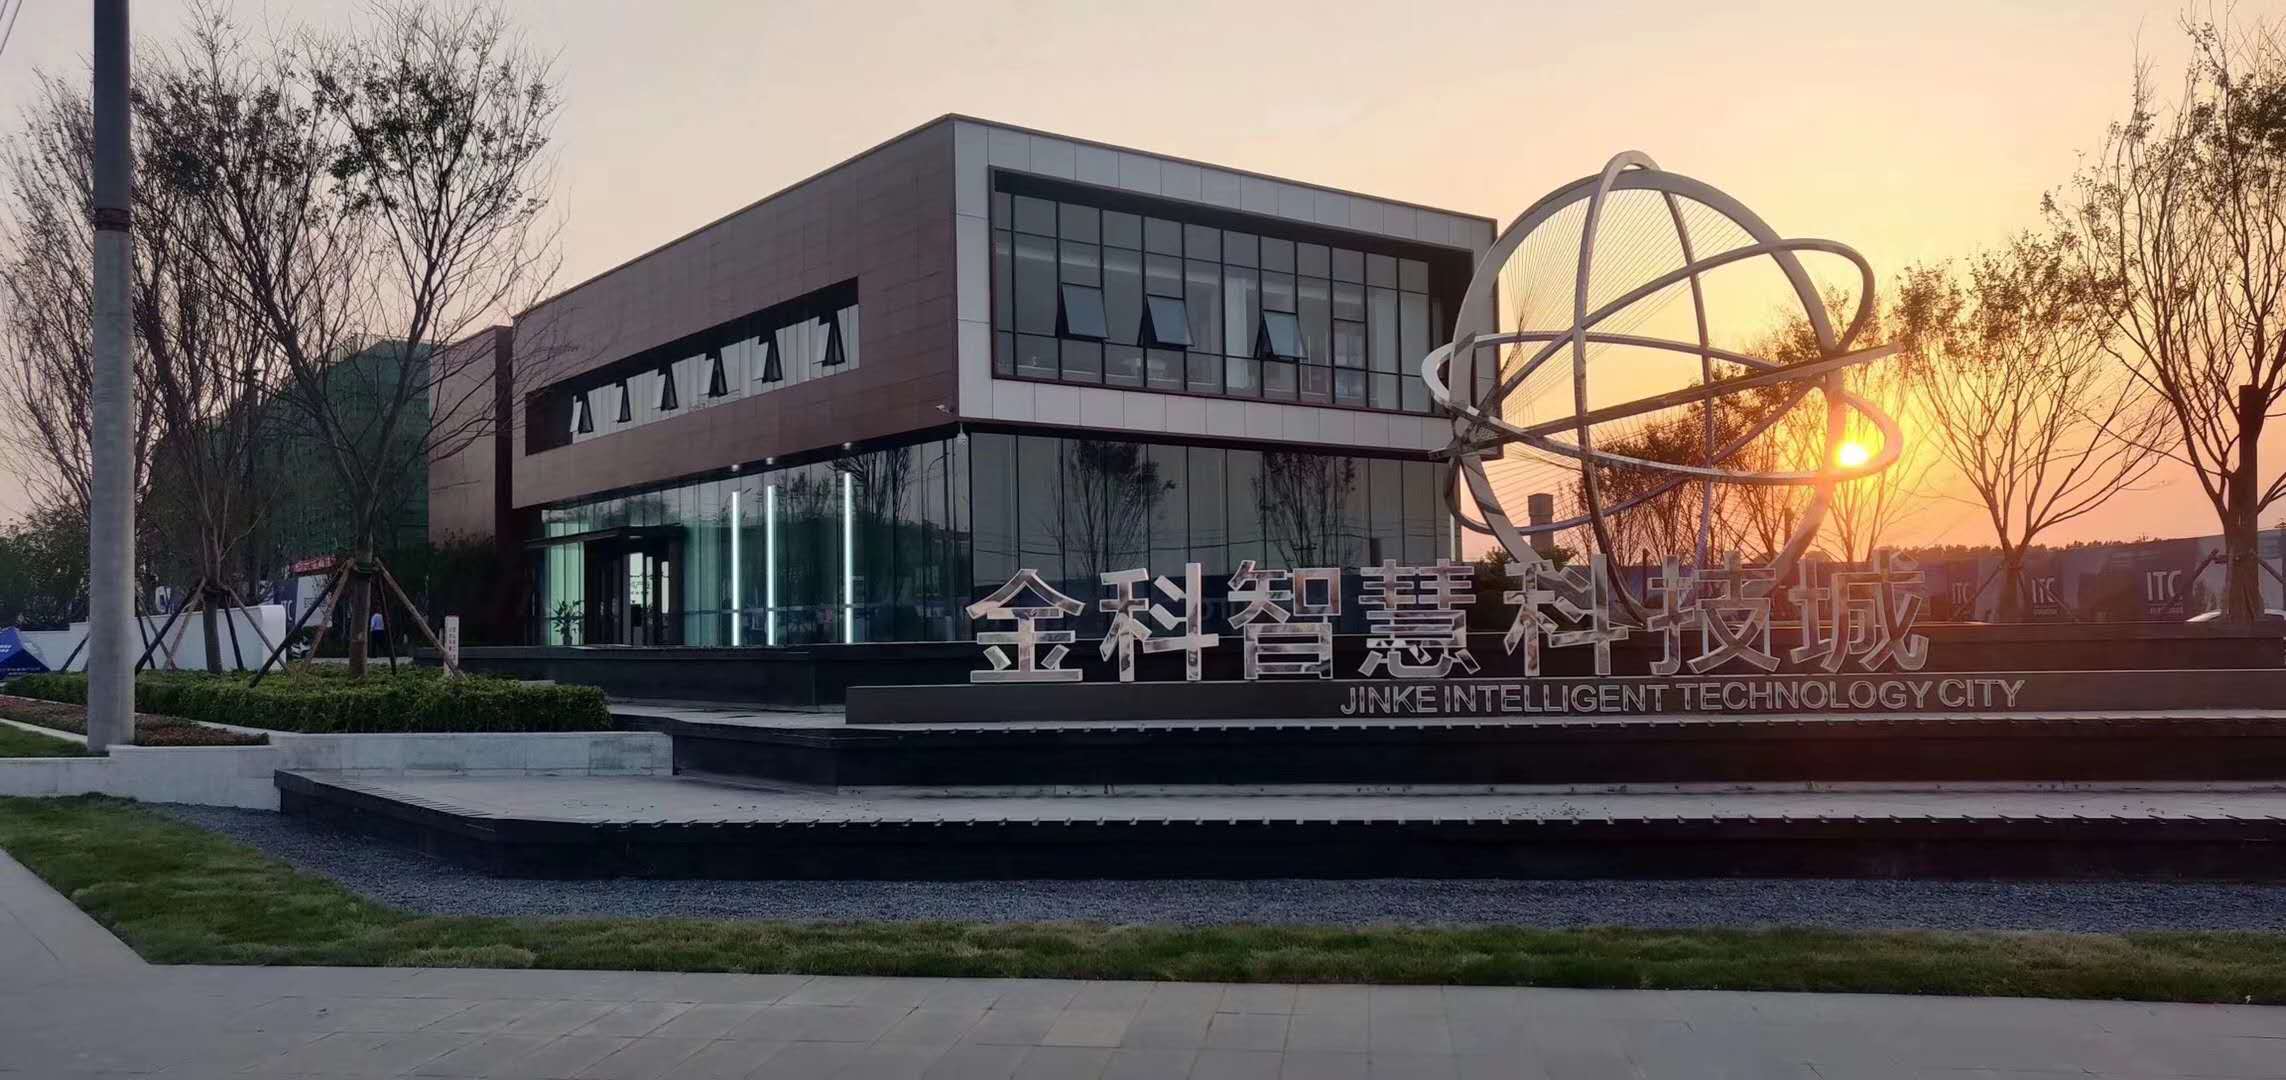 金科潍坊智慧科技城